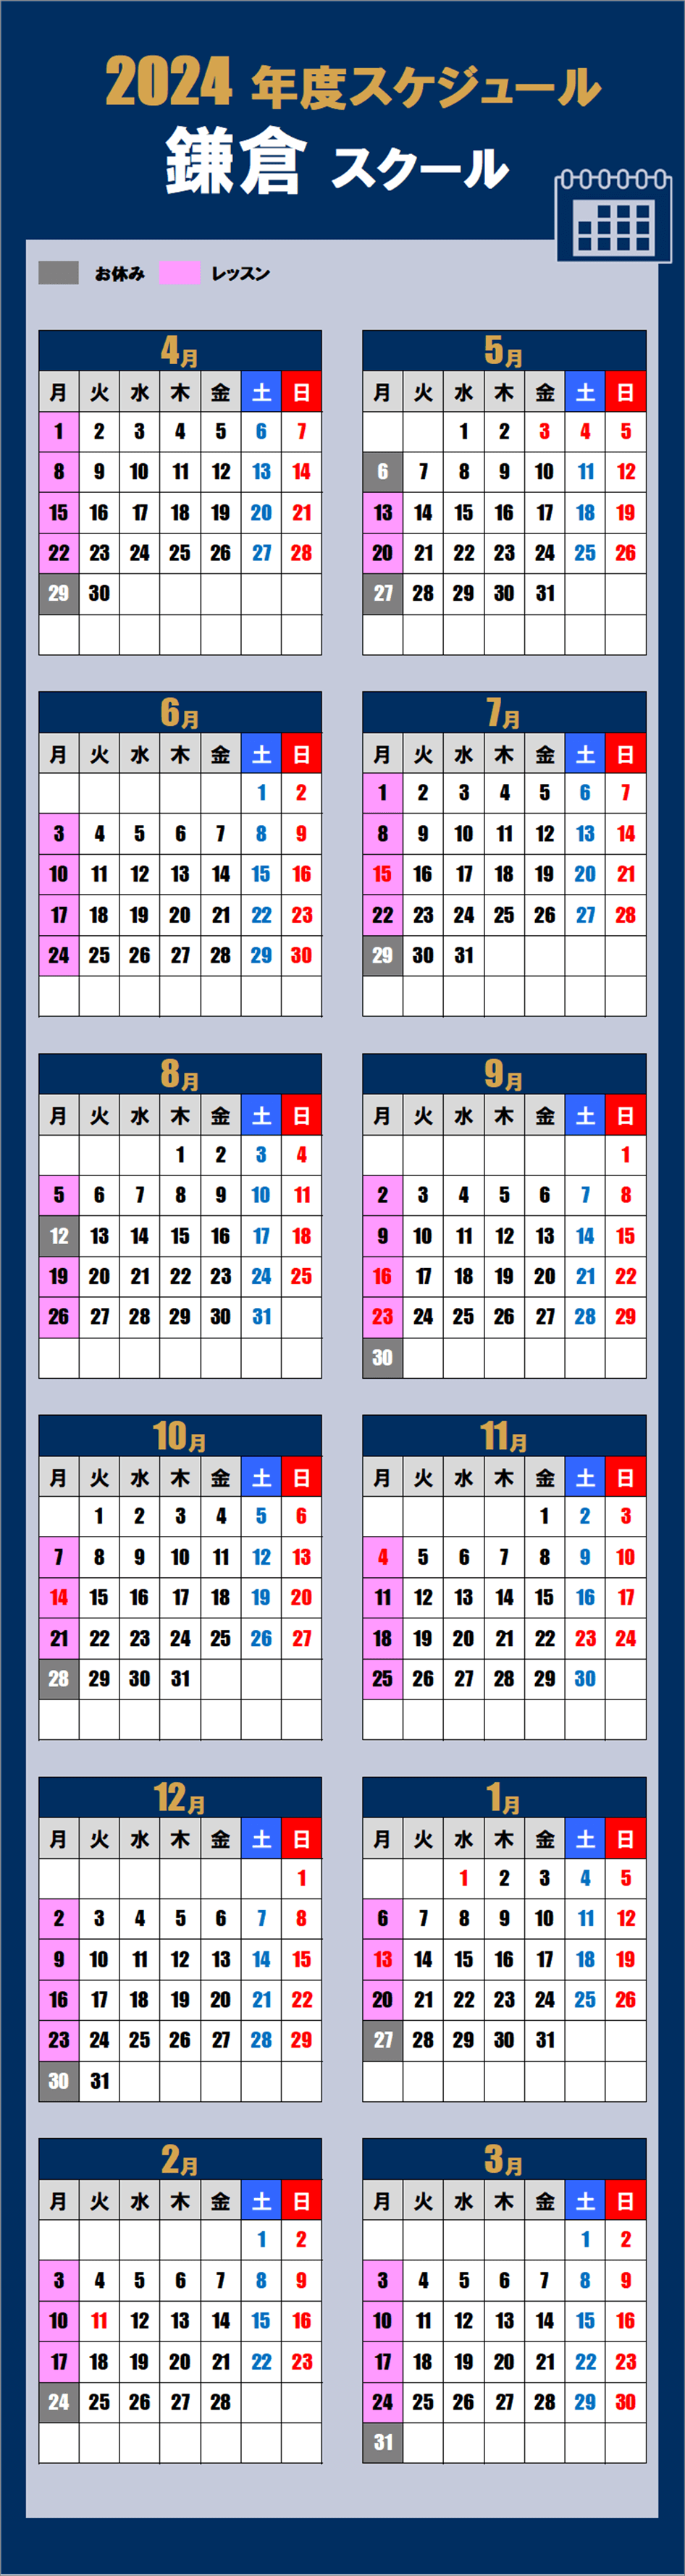 2024鎌倉スクールカレンダー